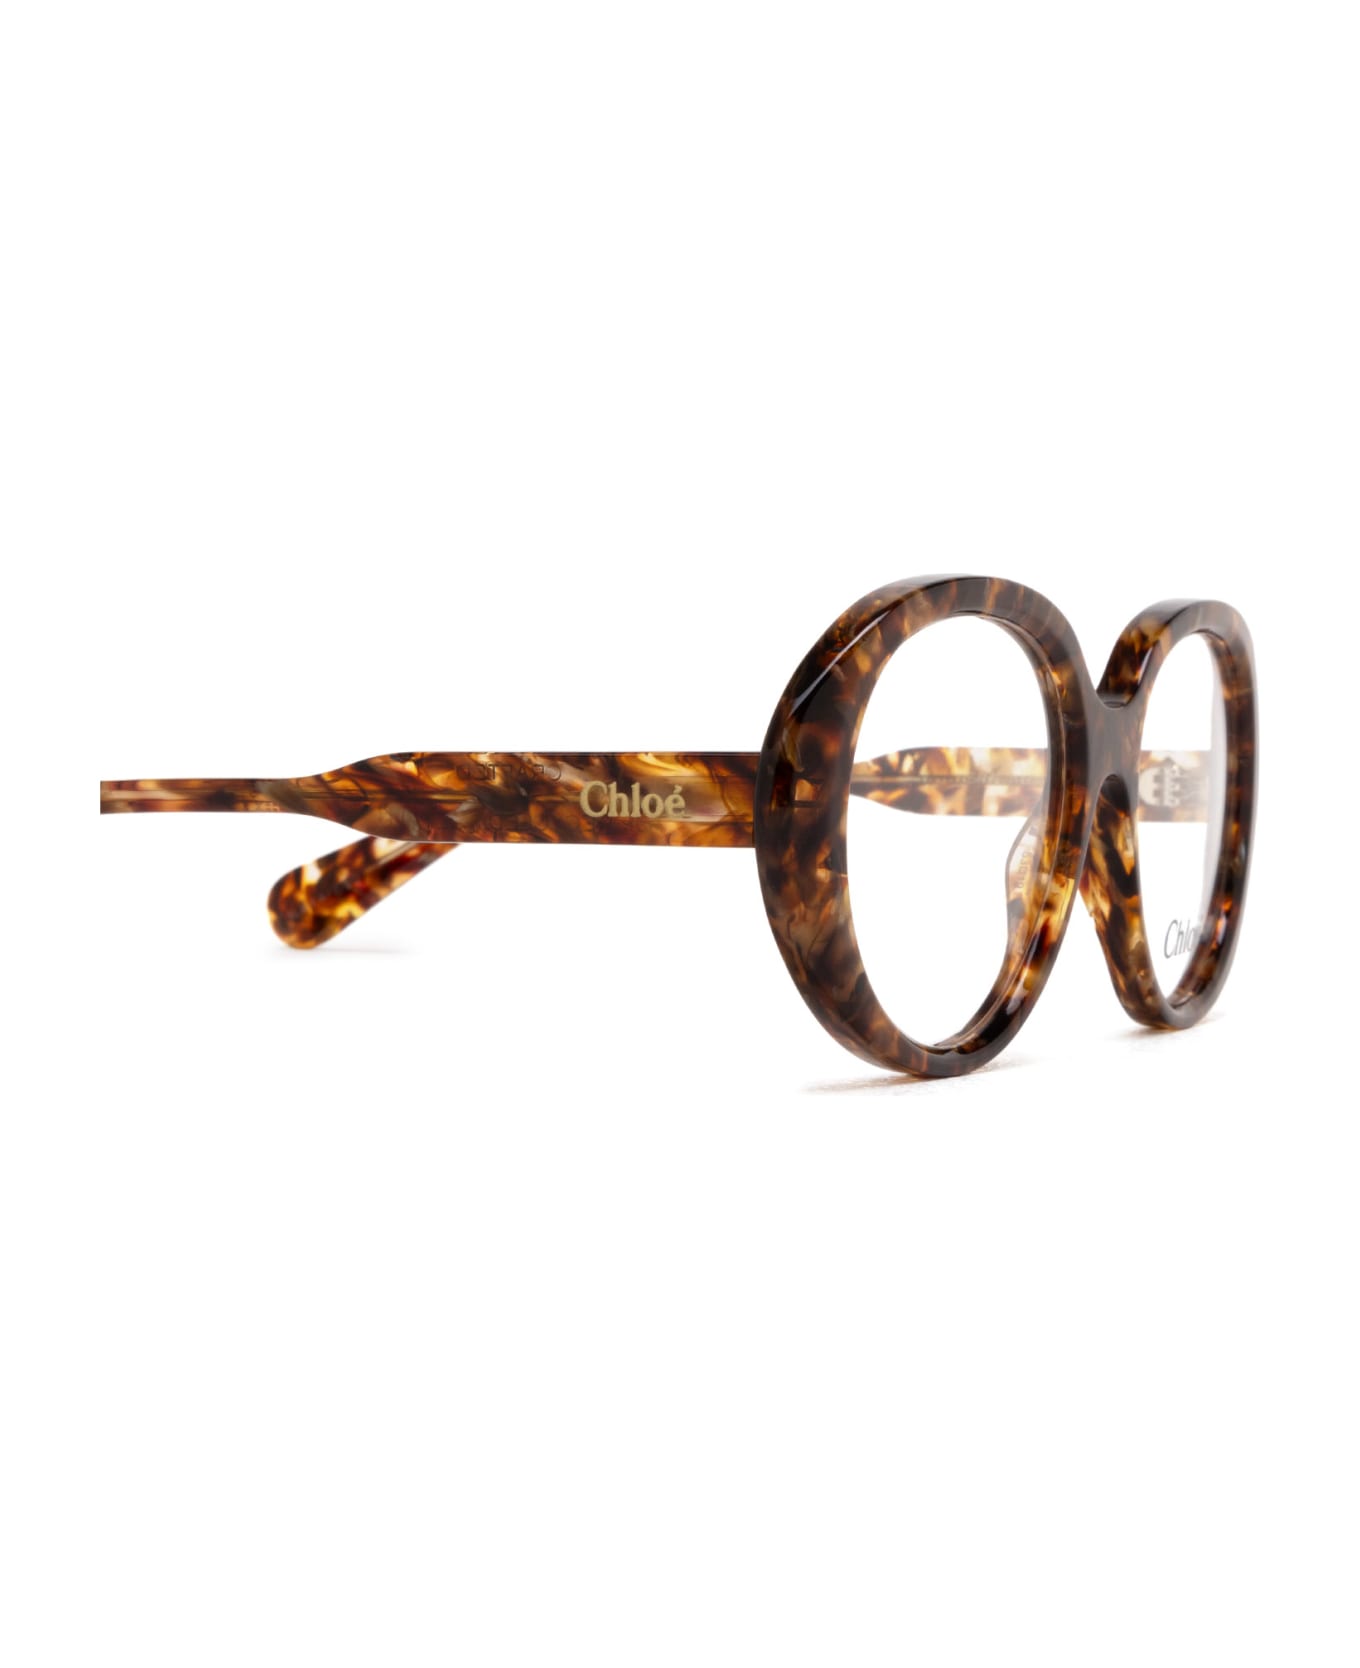 Chloé Eyewear Ch0221o Havana Glasses - Havana